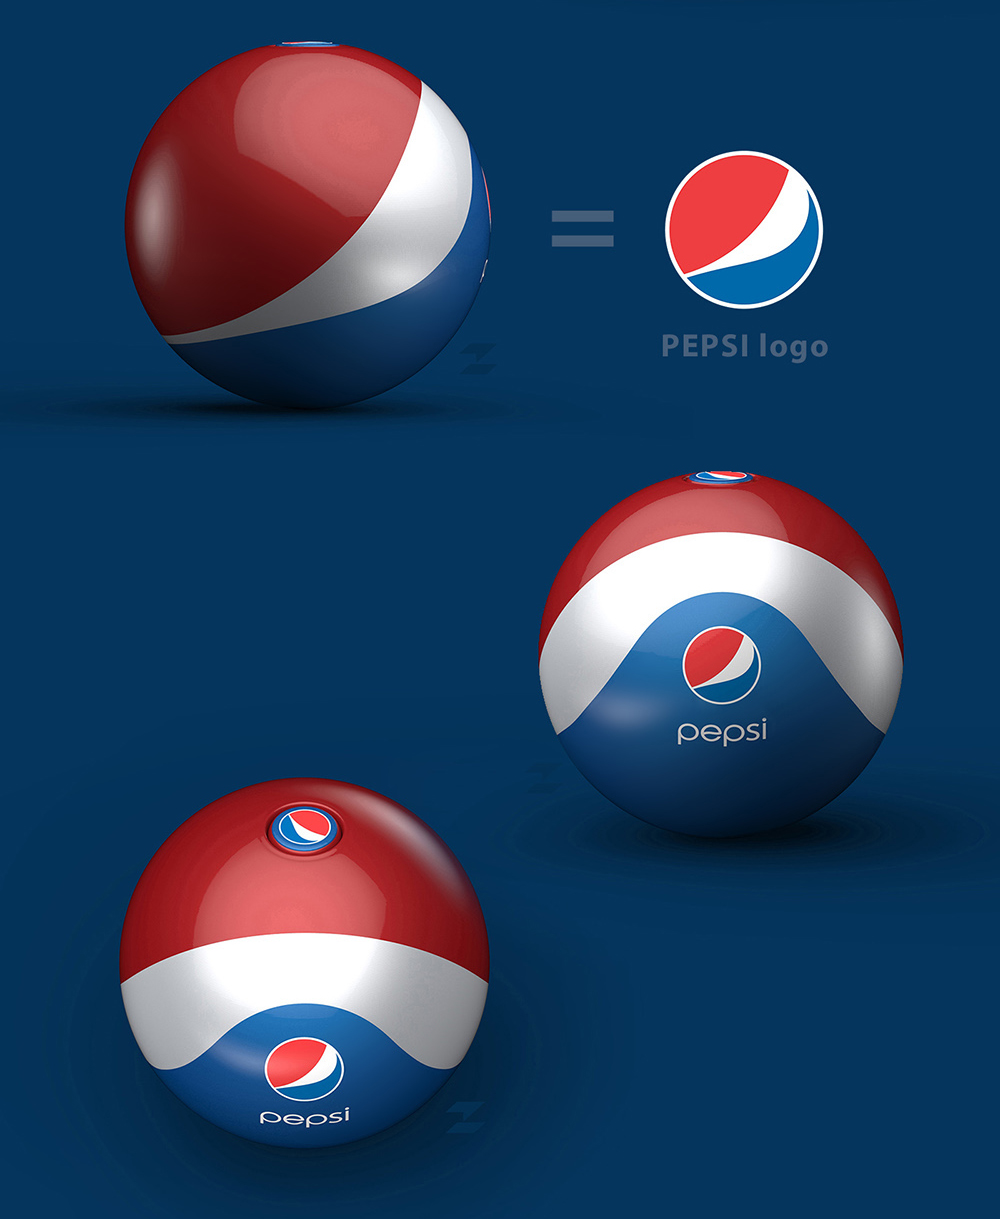 Pepsi-Rubber-Ball-Bottle-03